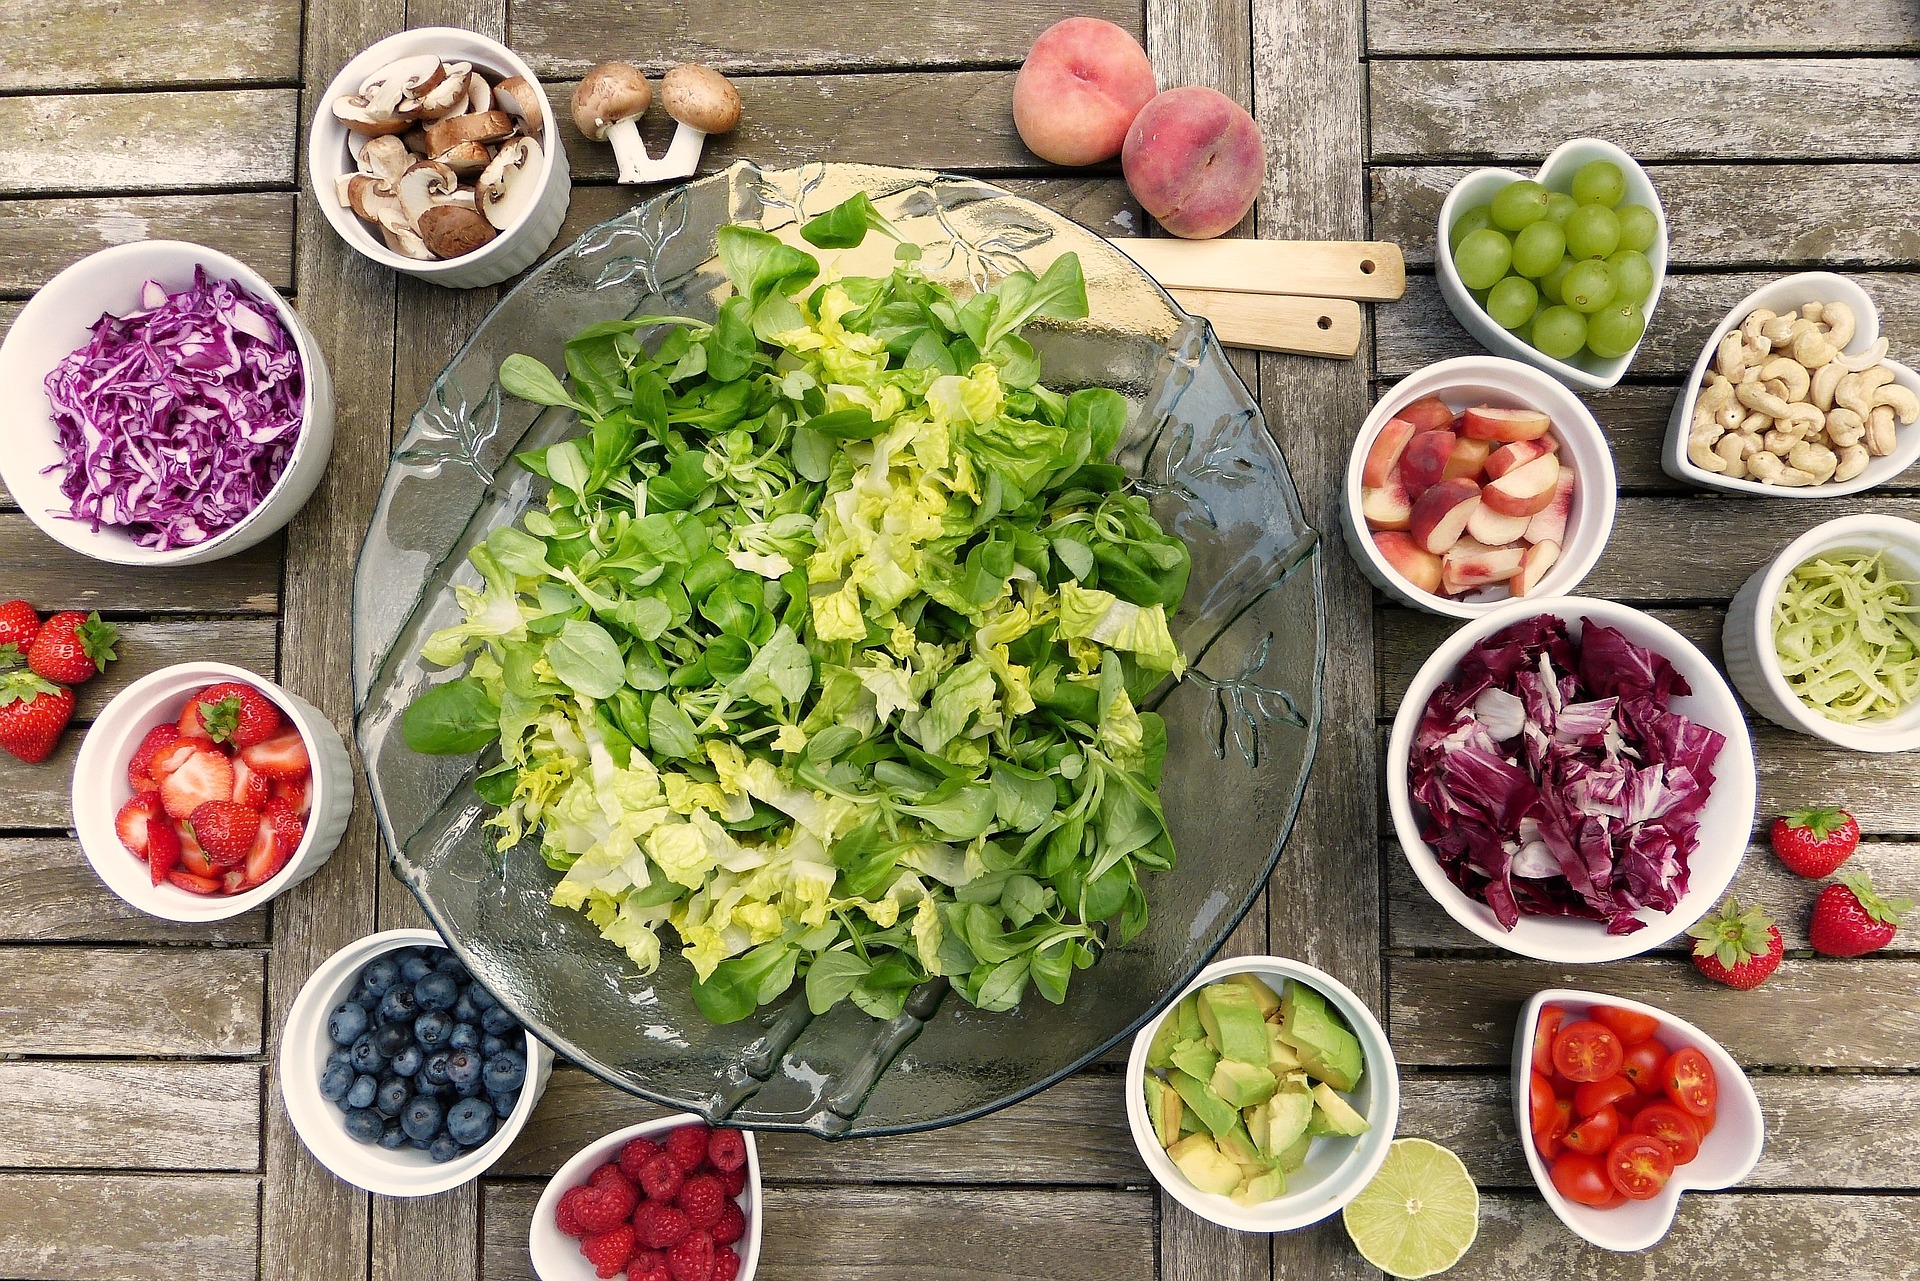 Velké množství ovoce a zeleniny přispívá k hubnutí / foto: pixabay.com